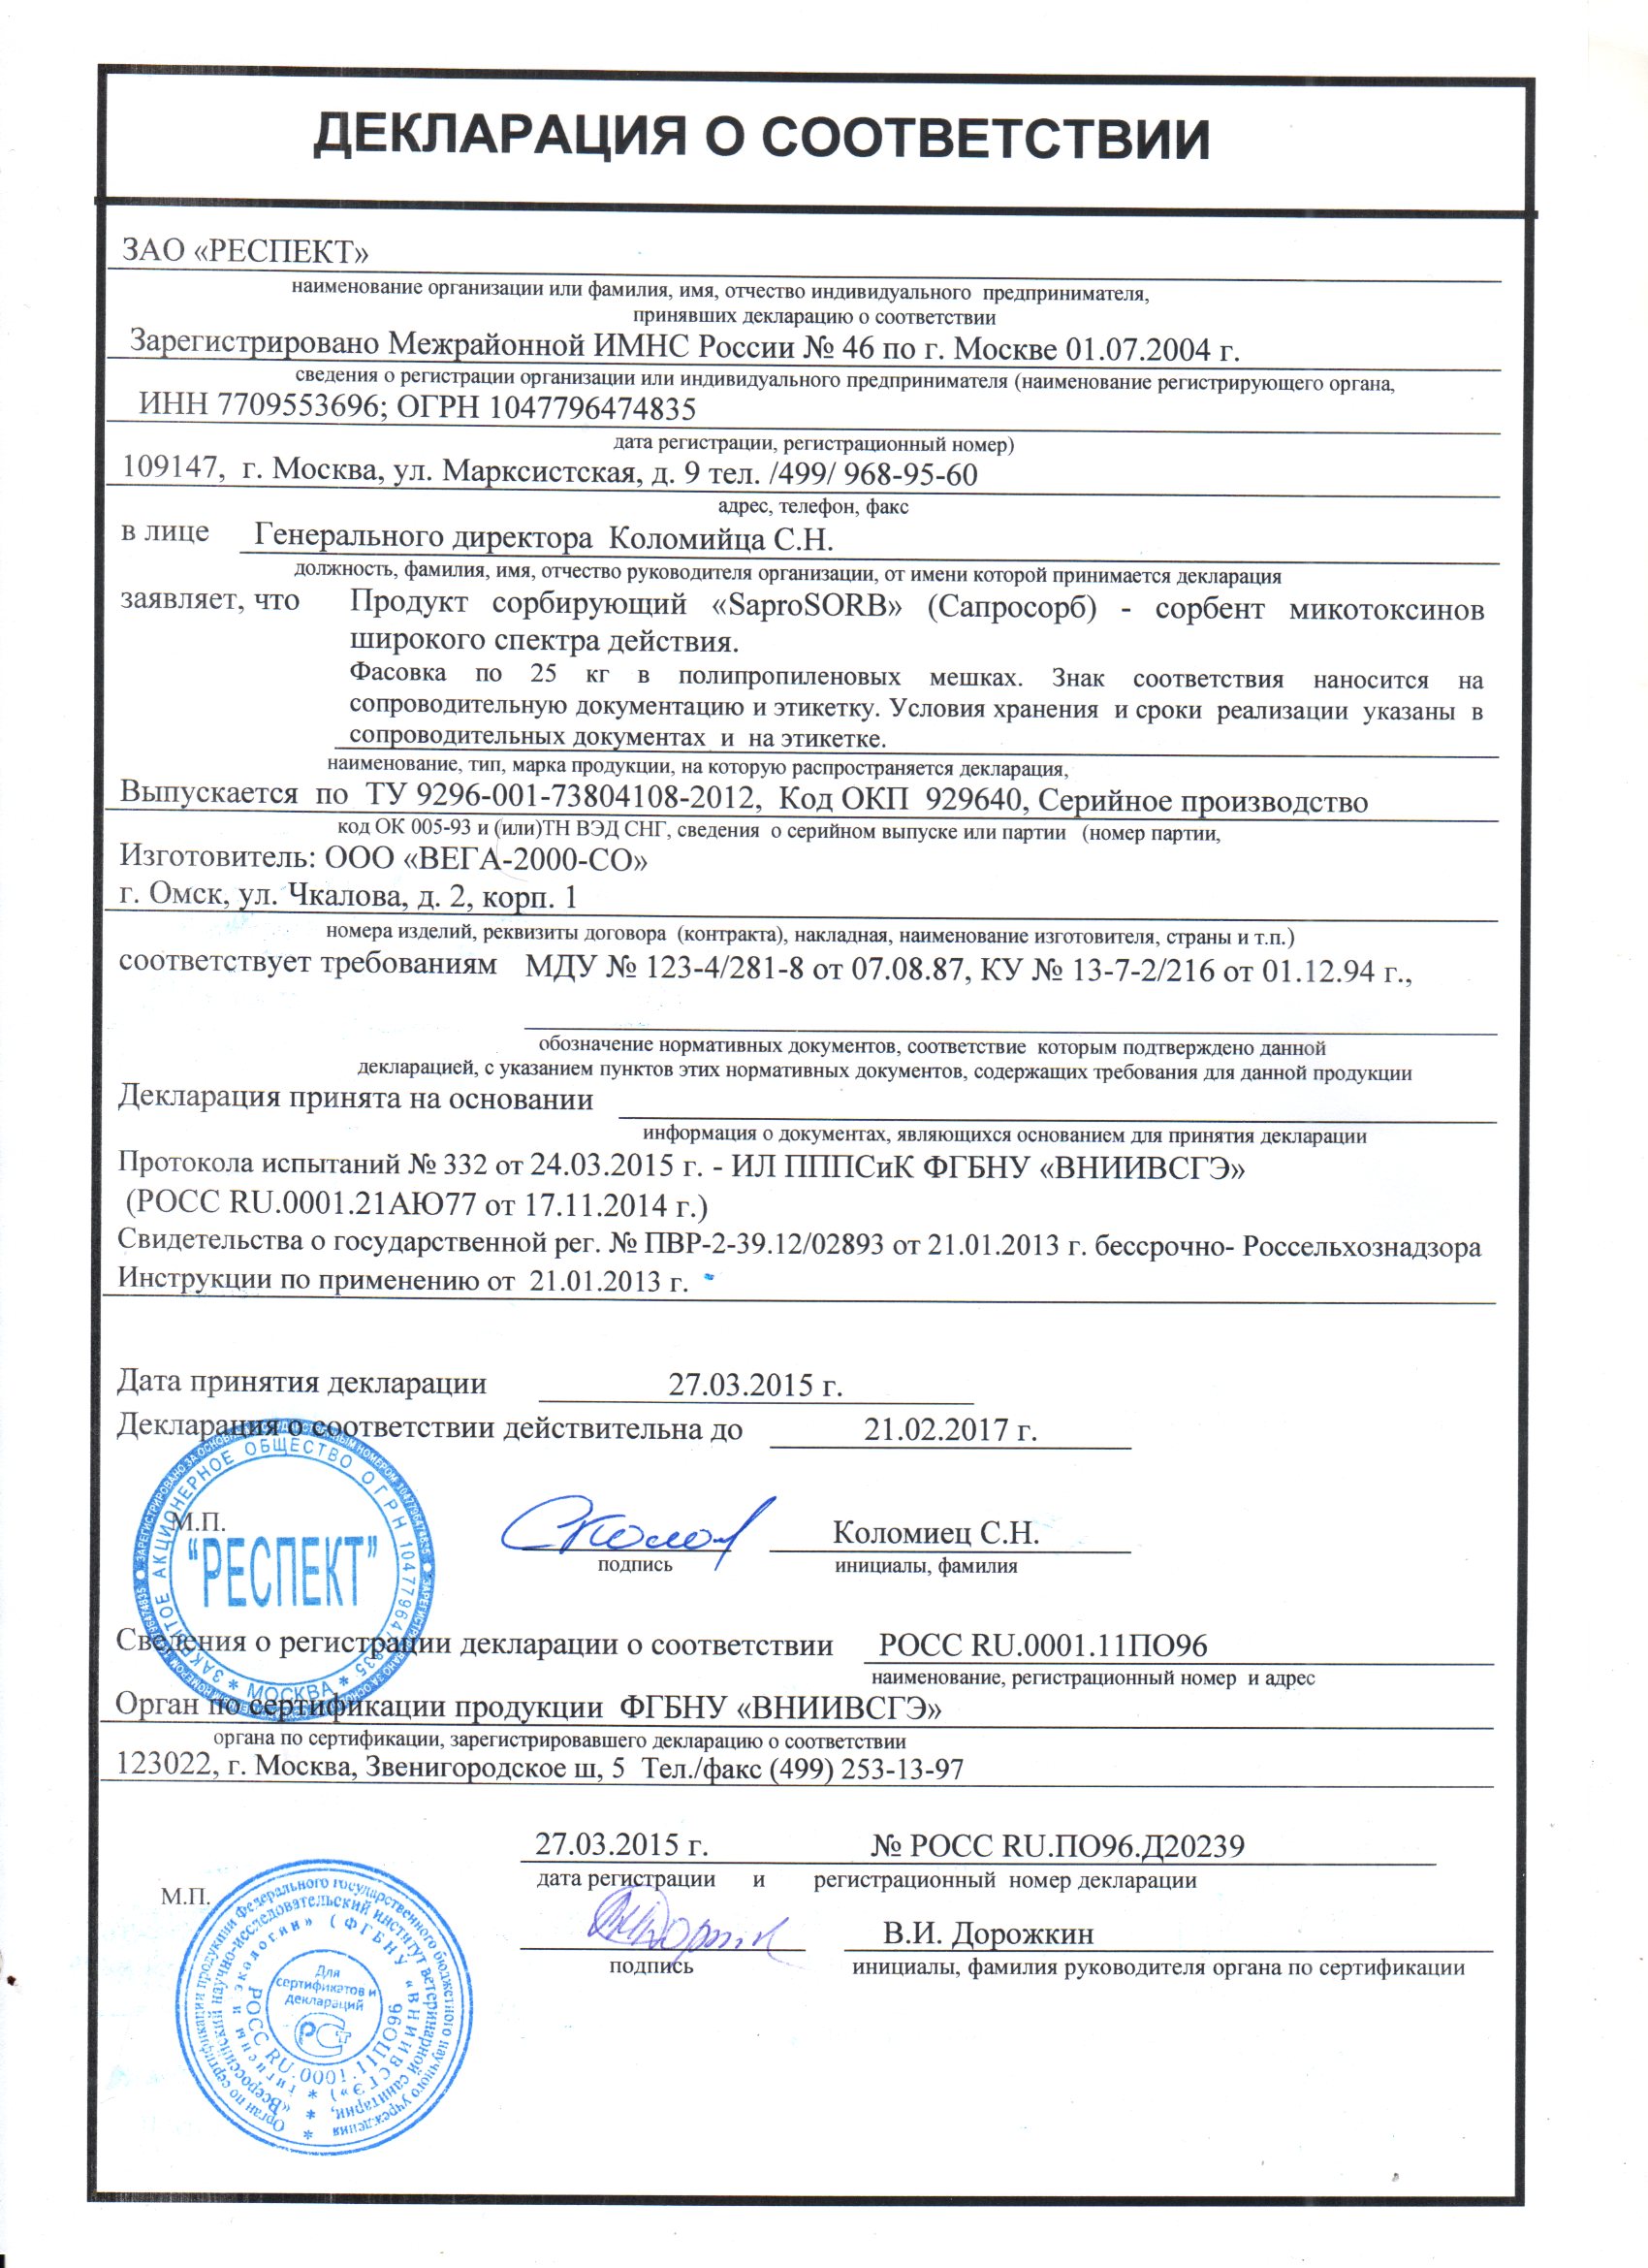 Декларация соответствия кормовой добавки для животных сорбента/адсорбента Сапросорб Saprosorb